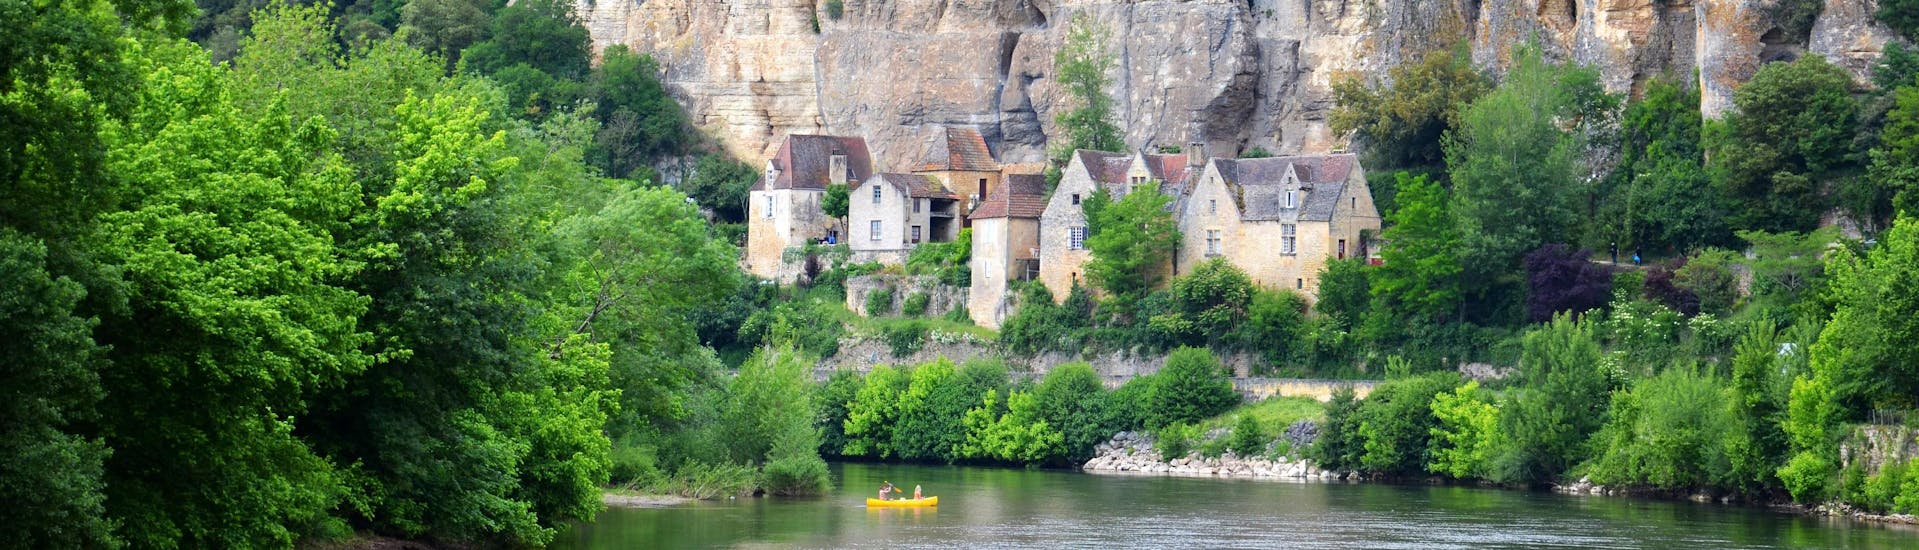 Des amateurs de canoë pagayent tranquillement sur la Vézère en Dordogne devant les habitats troglodytiques de la commune de Les Eyzies.